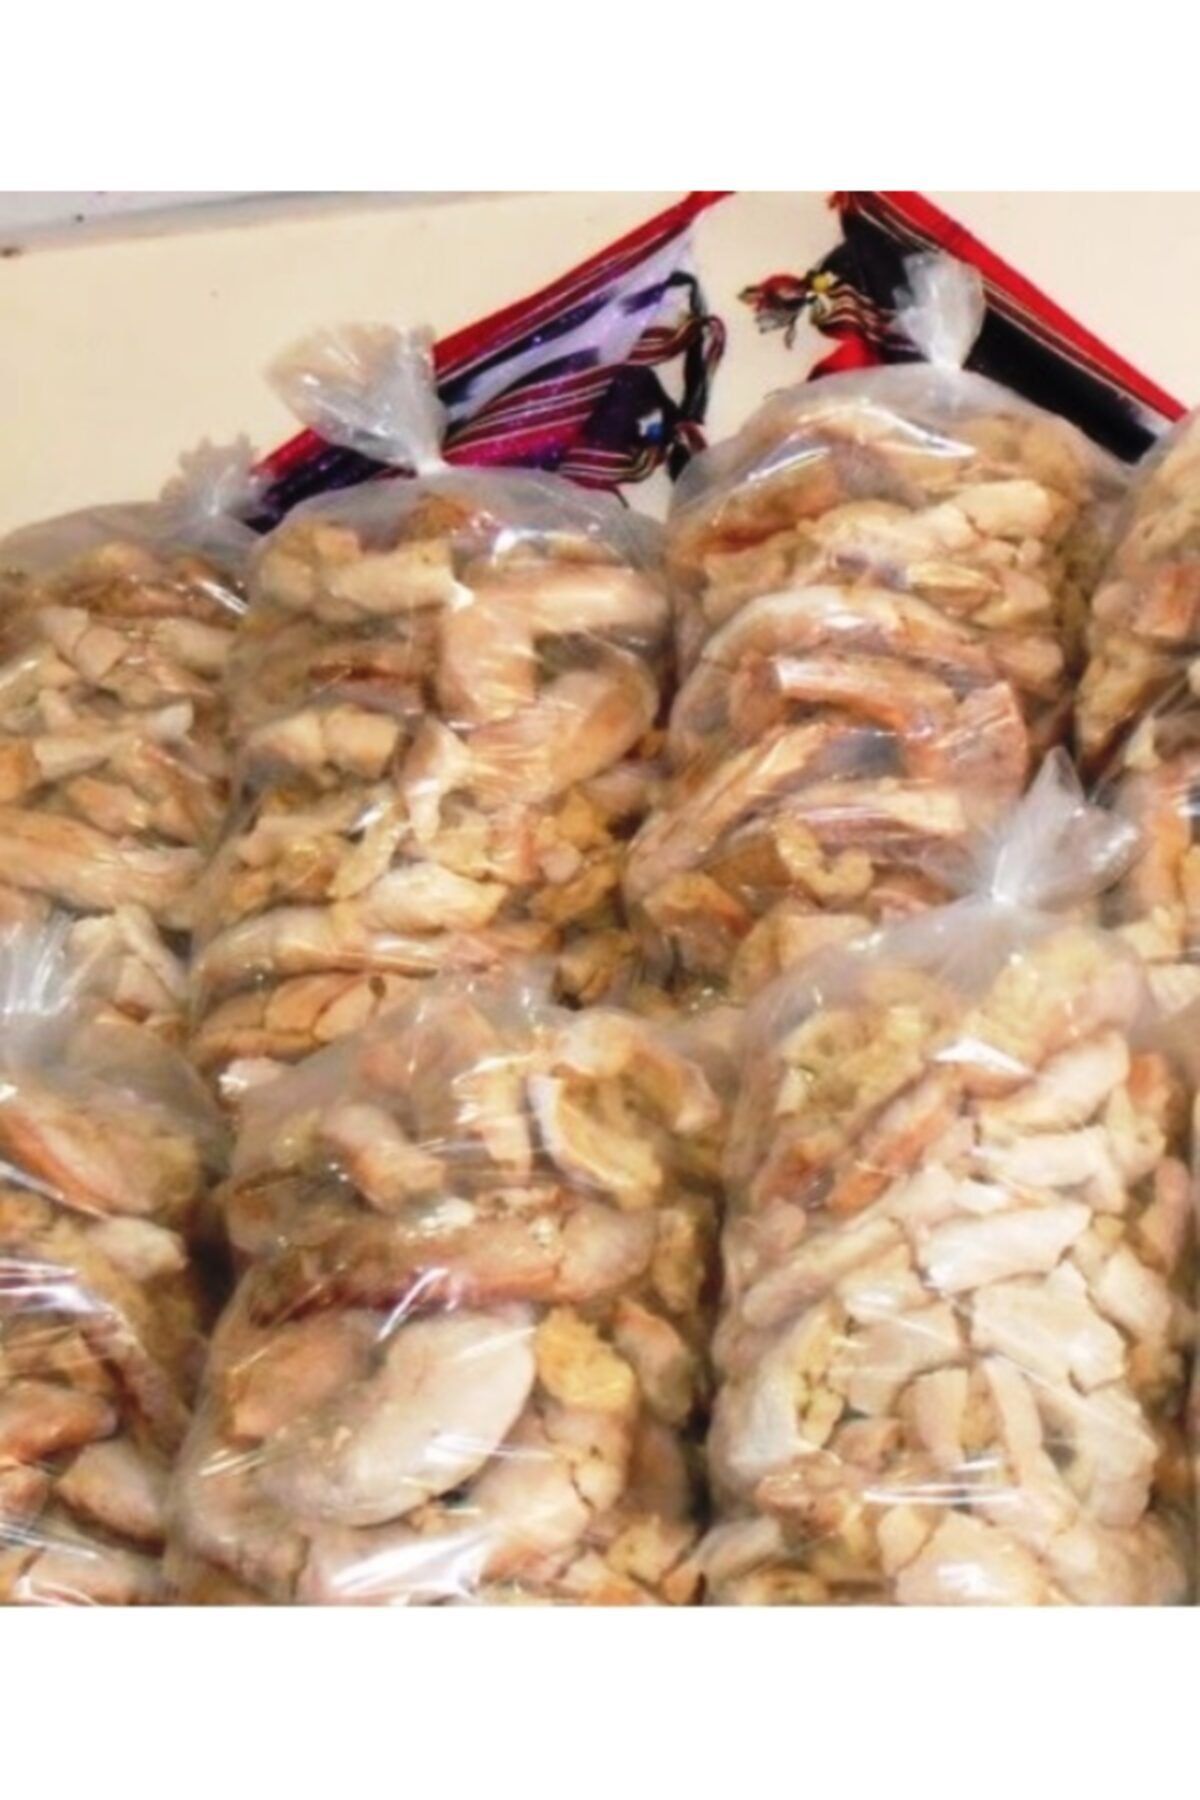 Anadoludan Gelsin Şebinkarahisar Yöresel Fırın Kurusu-(Golit)-kuru Ekmek Paket